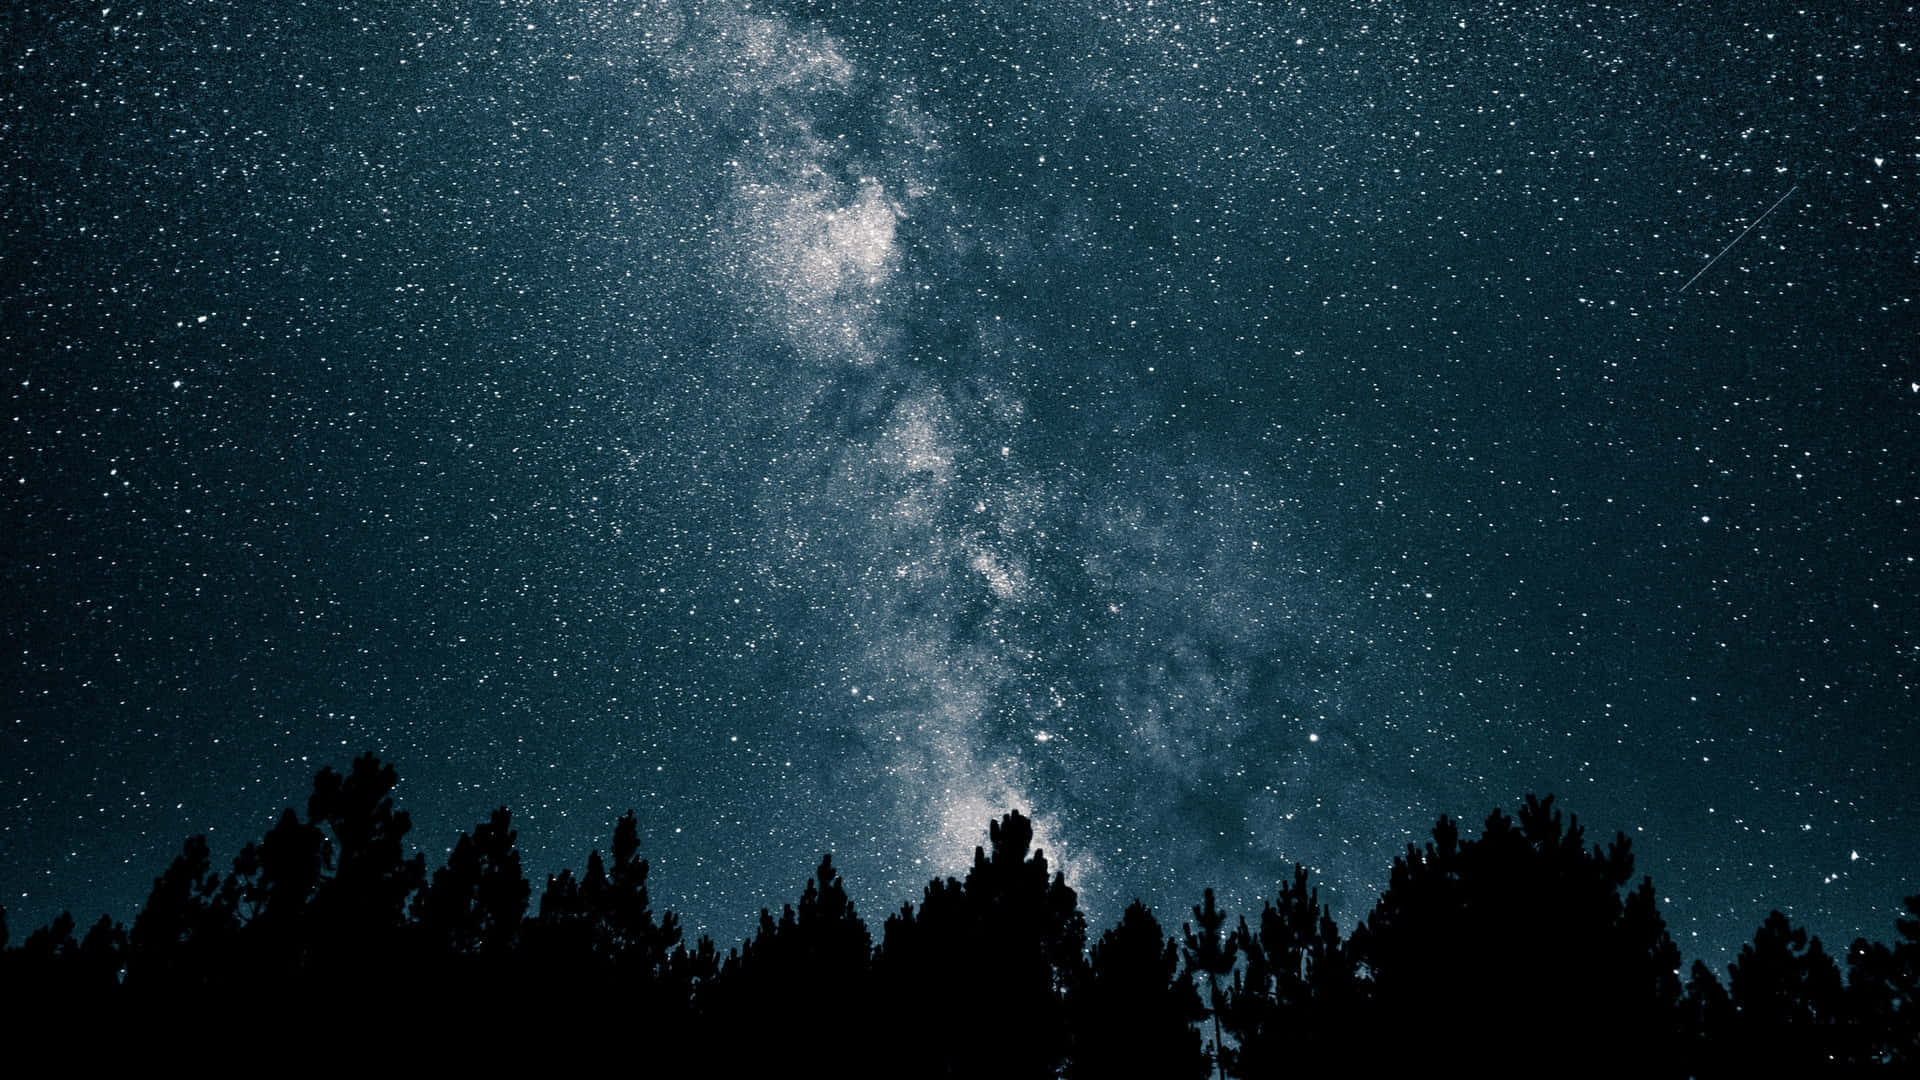 Embrace the stillness of the night sky